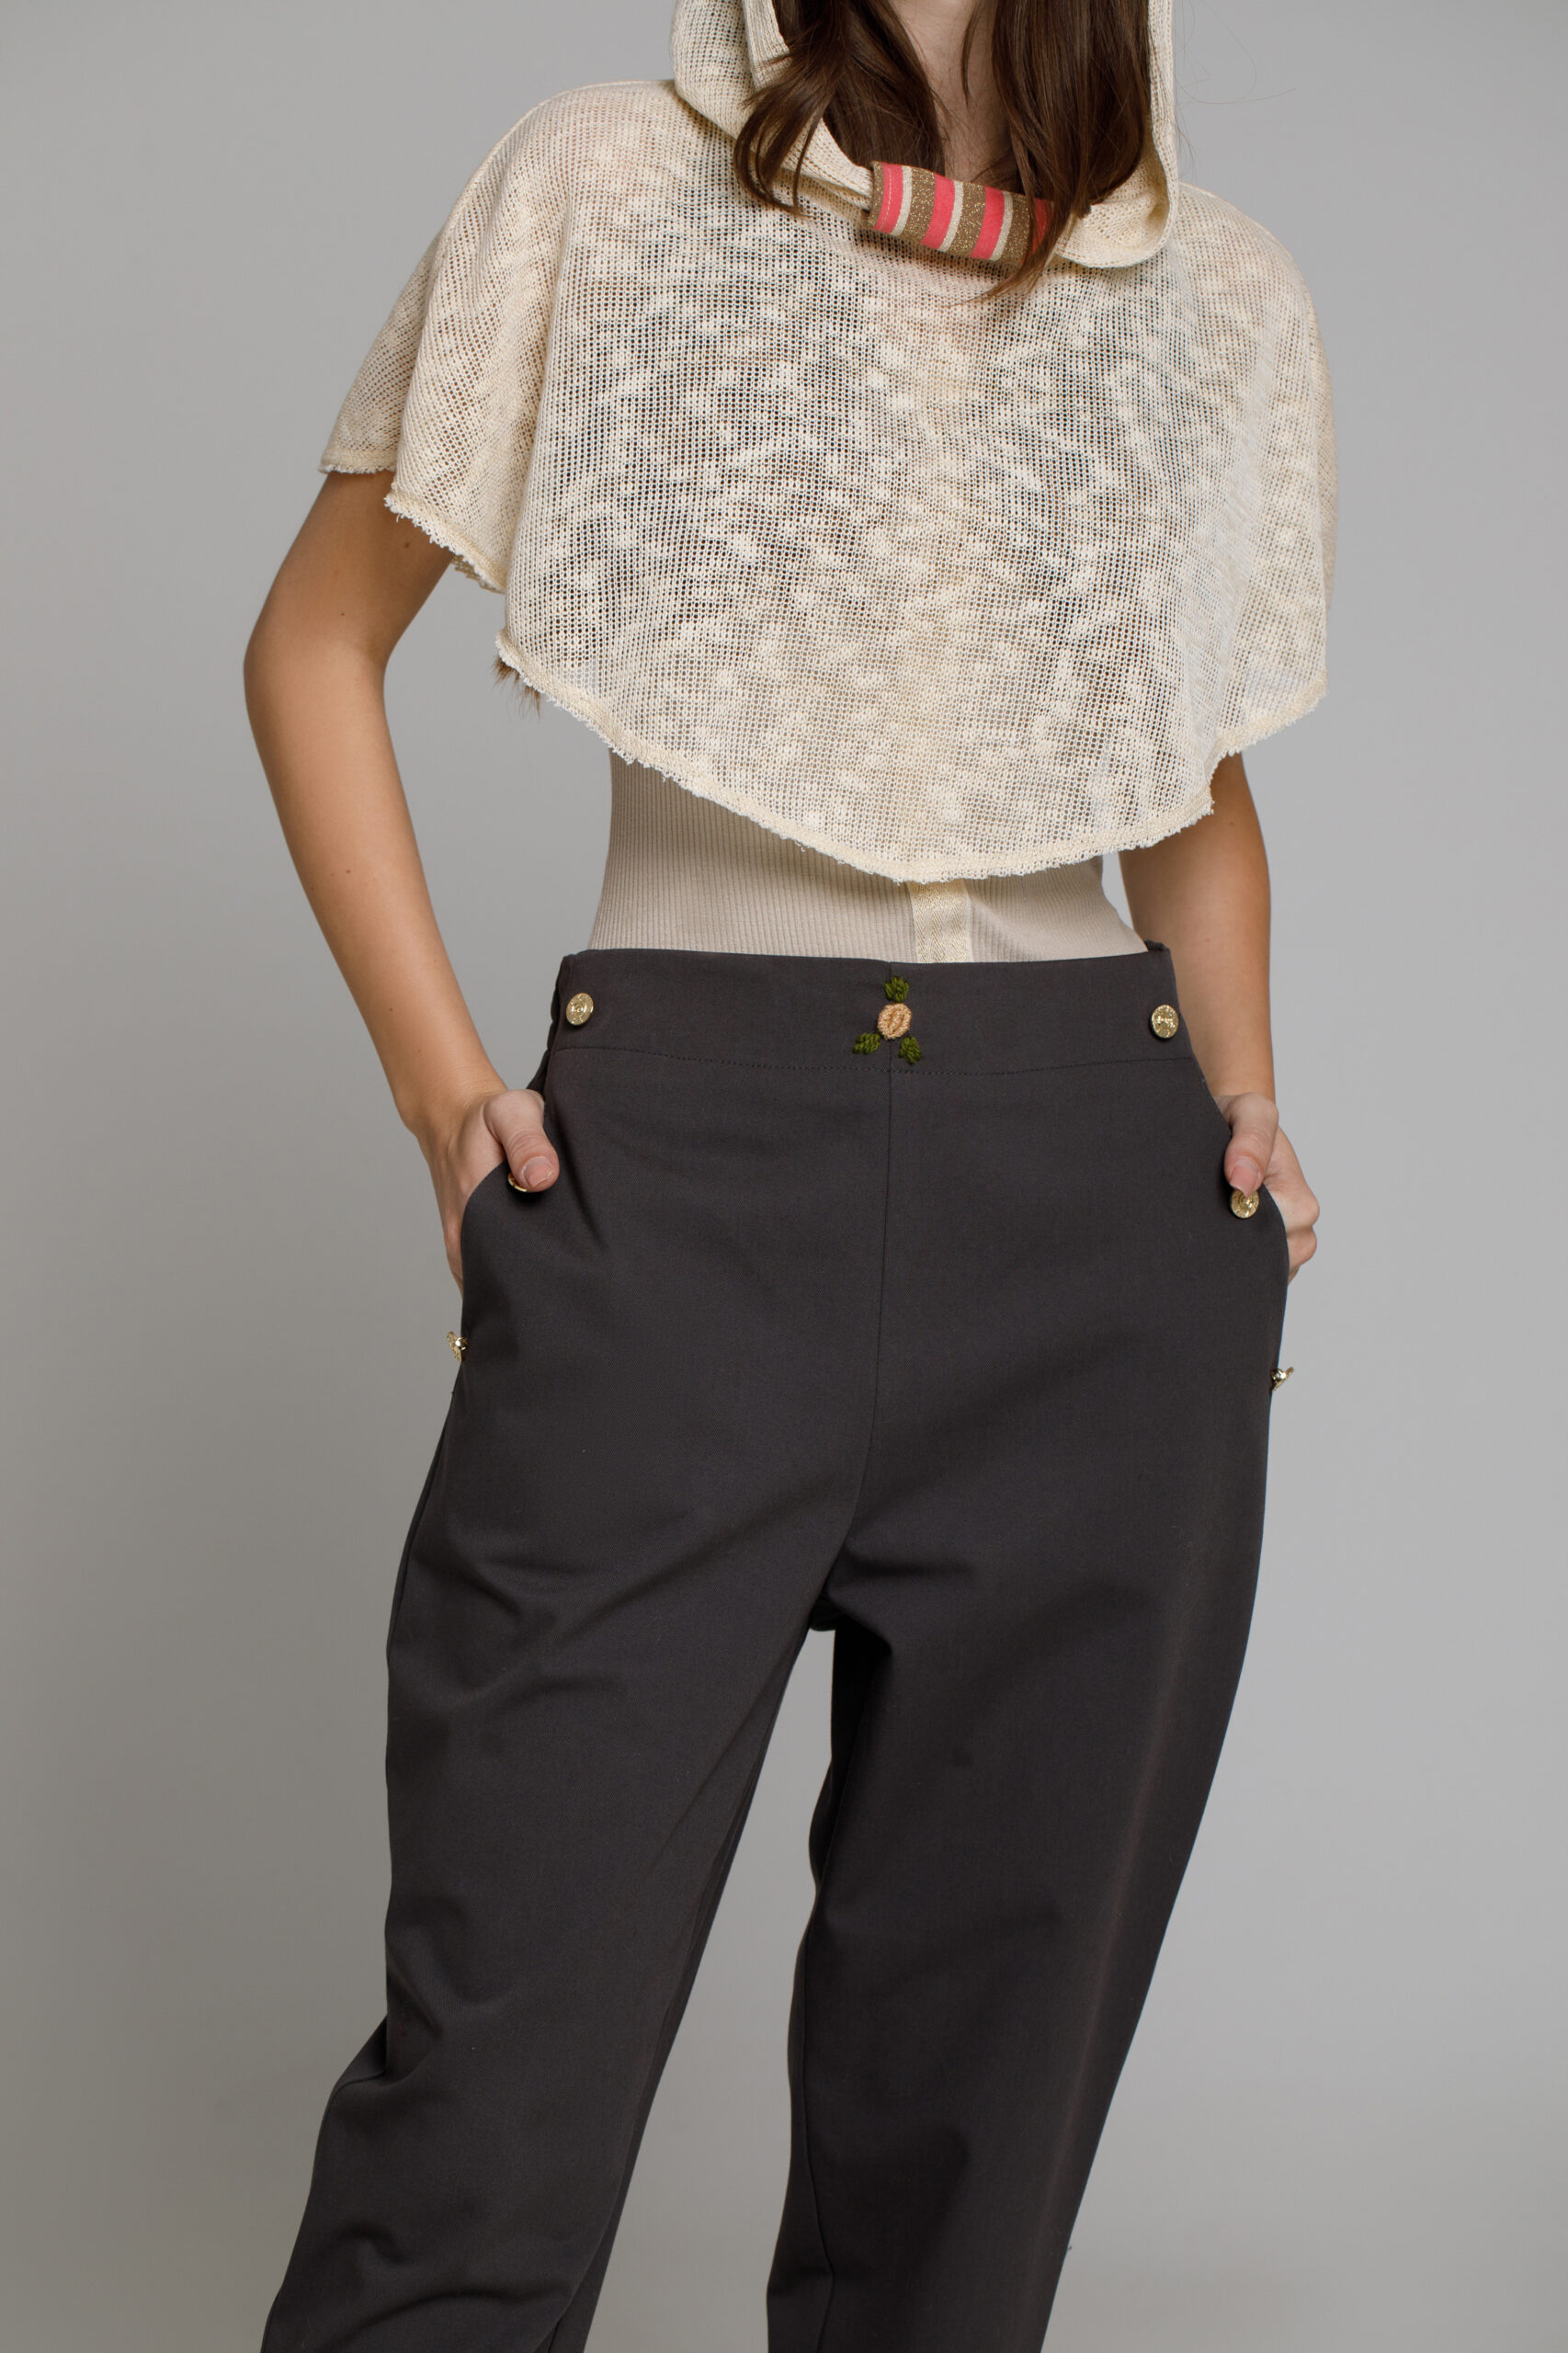 RADA trousers in gray tercot. Natural fabrics, original design, handmade embroidery